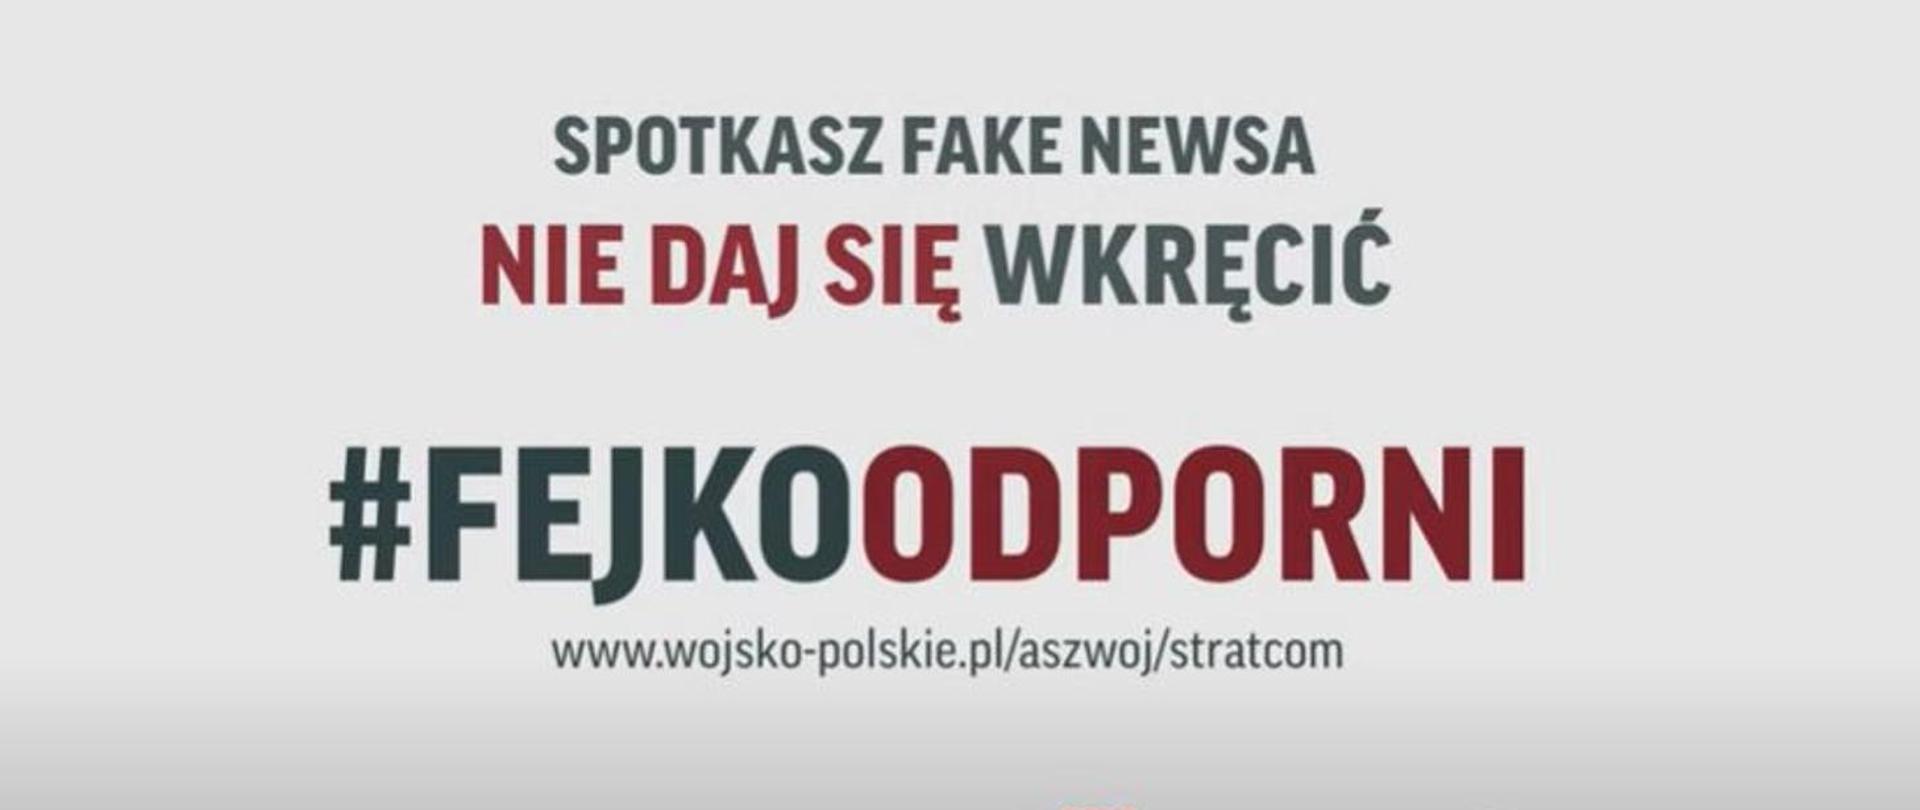 Obraz w poziomie. Na szarym tle czarno-czerwony napis "Spotkasz fake newsa nie daj się wkręcić! #fejkoodporni"